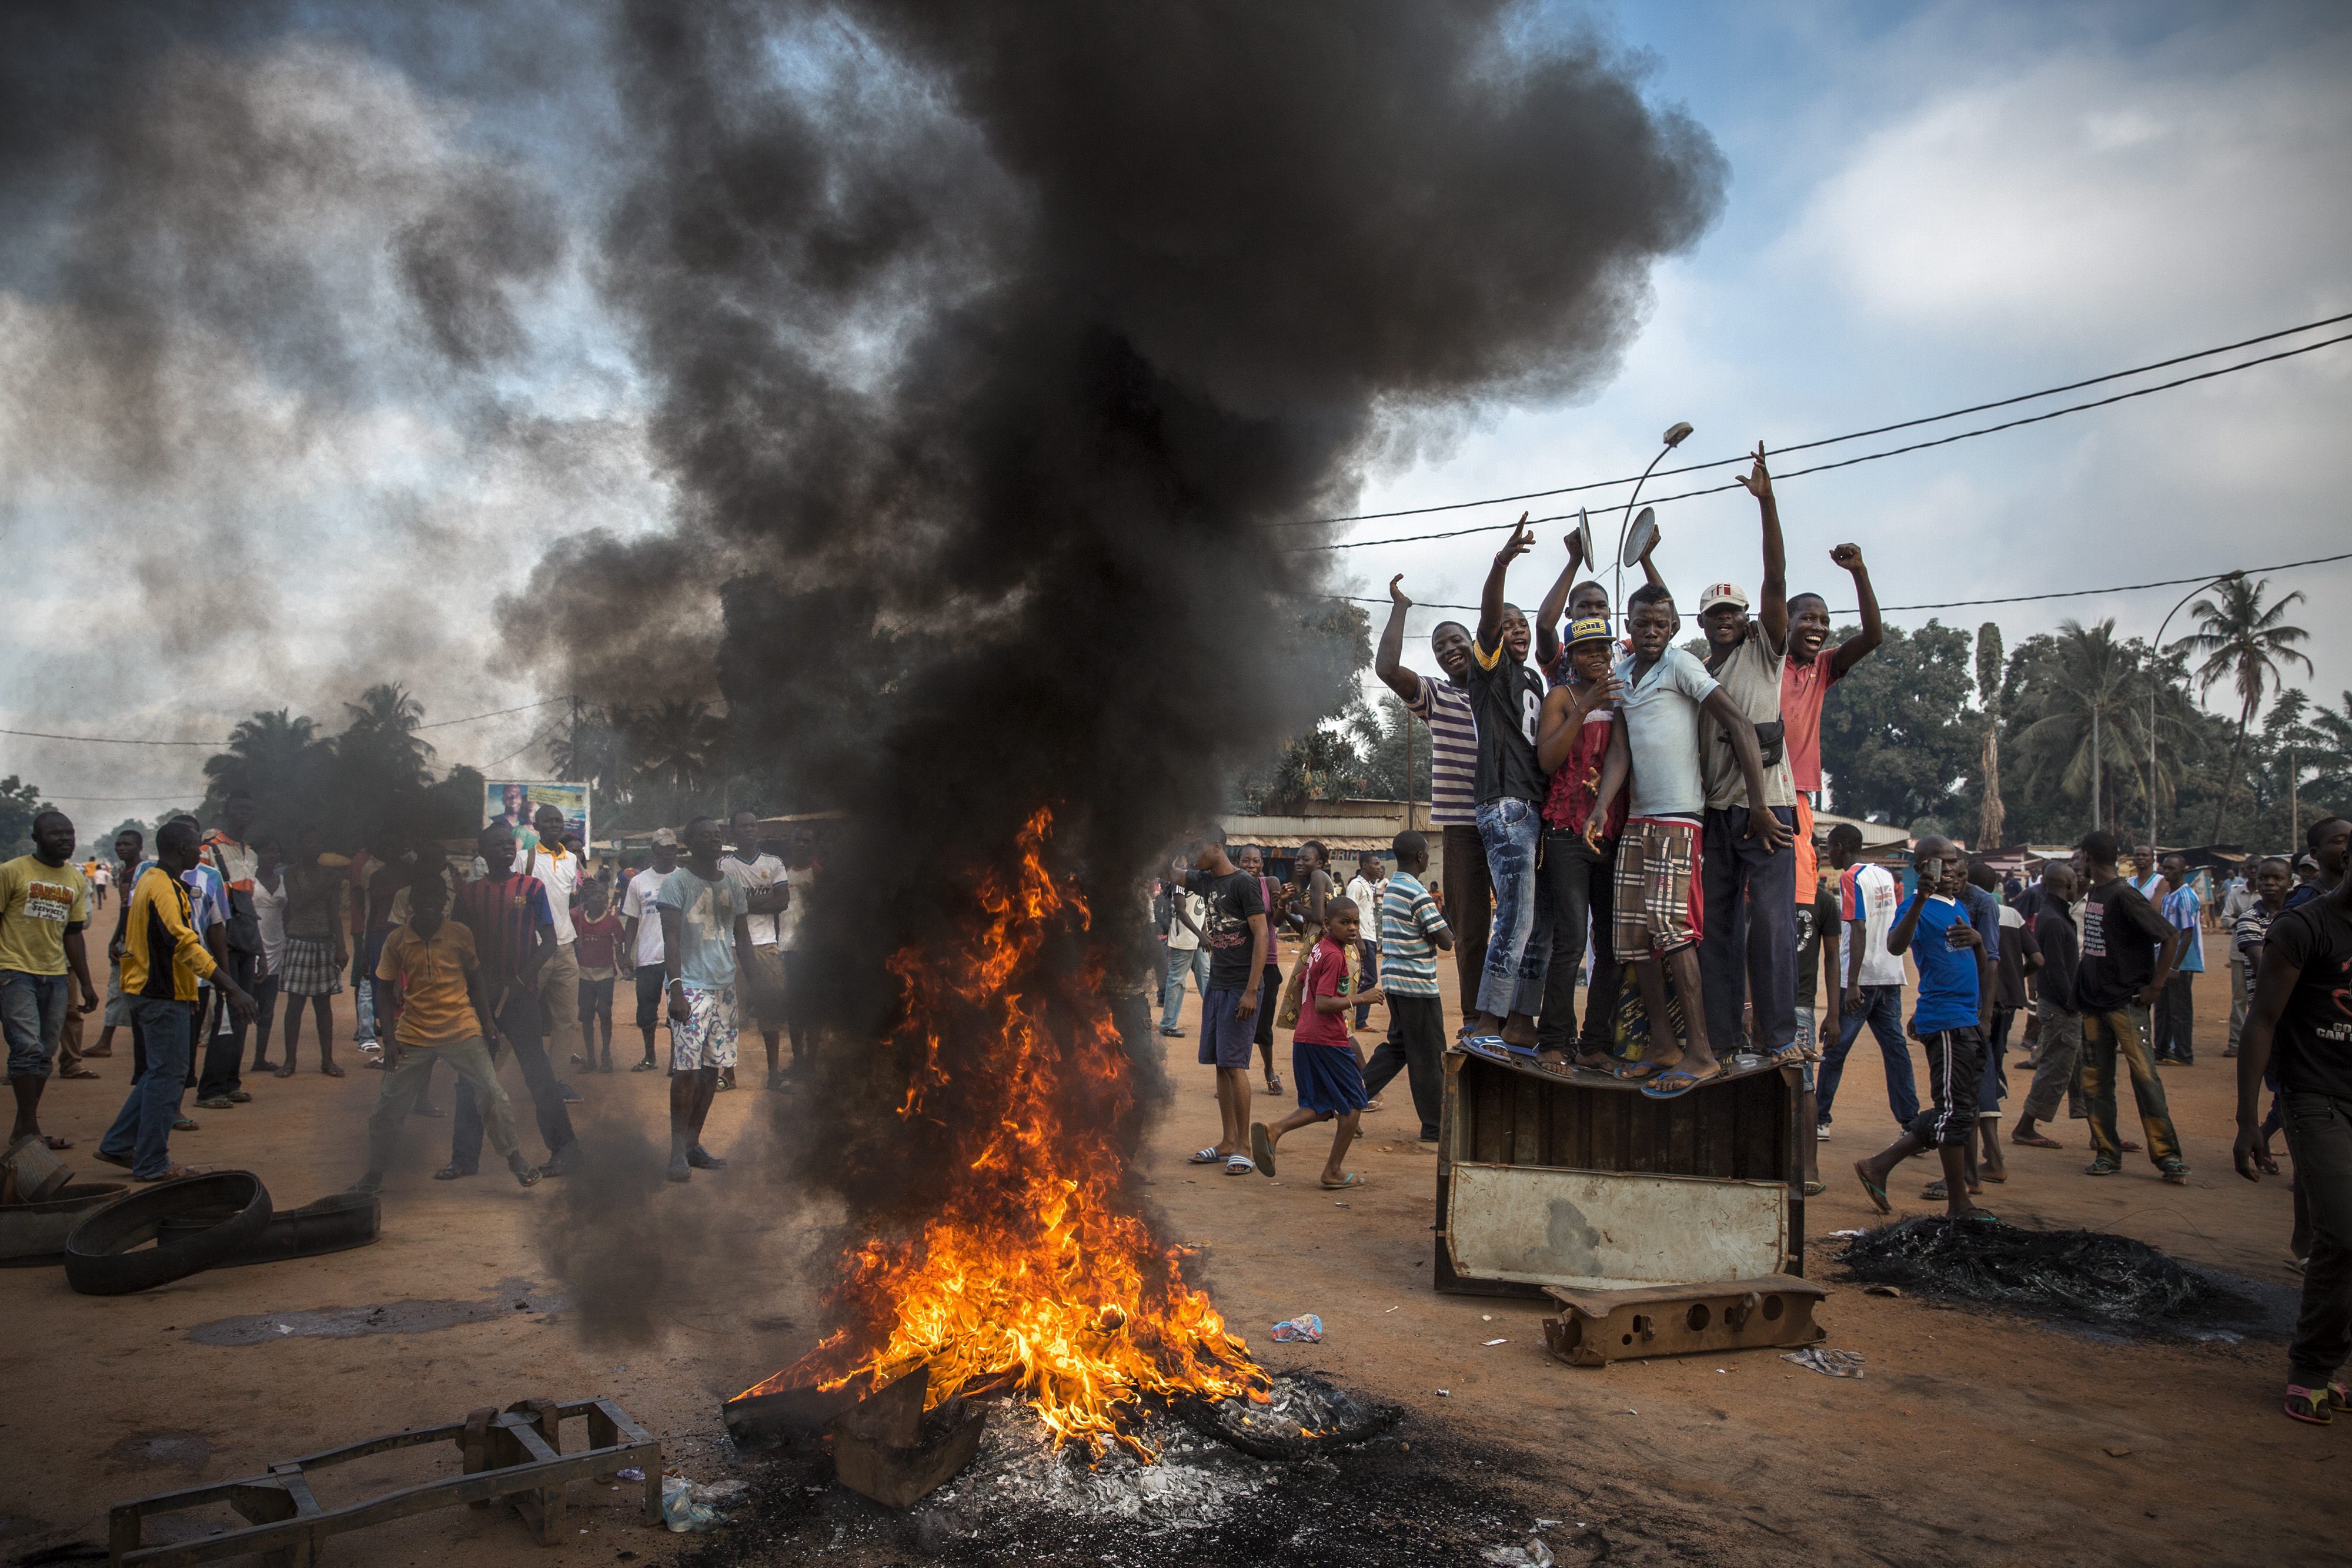 Снимка на френския фотограф Уилям Даниелс от протест с искане за оставката на президента на Централноафриканската република